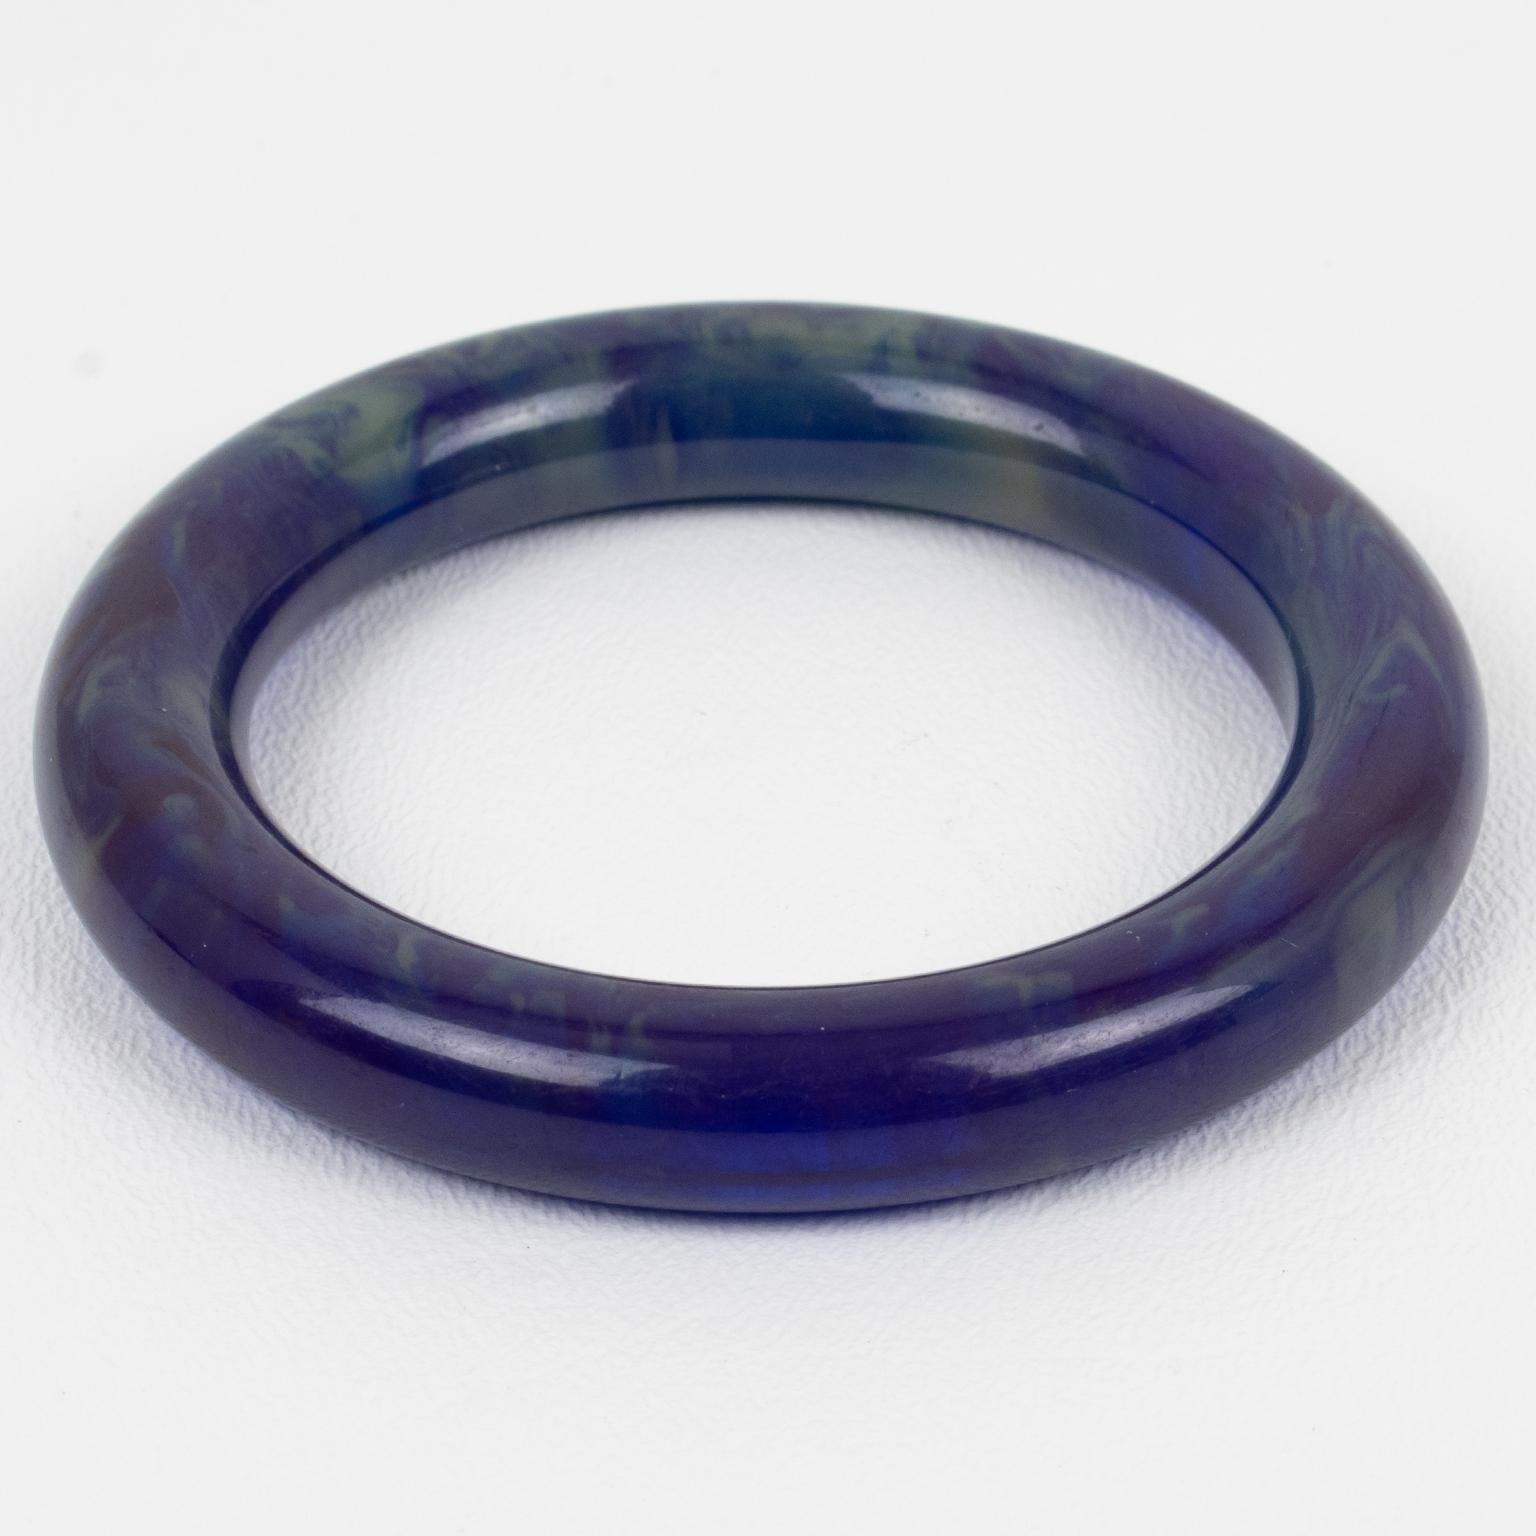 Dieser schöne Bakelit-Armreif hat eine klobige Röhrenform mit einer intensiven lila-blauen Farbe und wolkigen, cremefarbenen Puddingwirbeln, auch Tintenfleckfarbe genannt.
Abmessungen: Innendurchmesser: 2,38 cm (6 cm) - Außendurchmesser: 3,25 cm